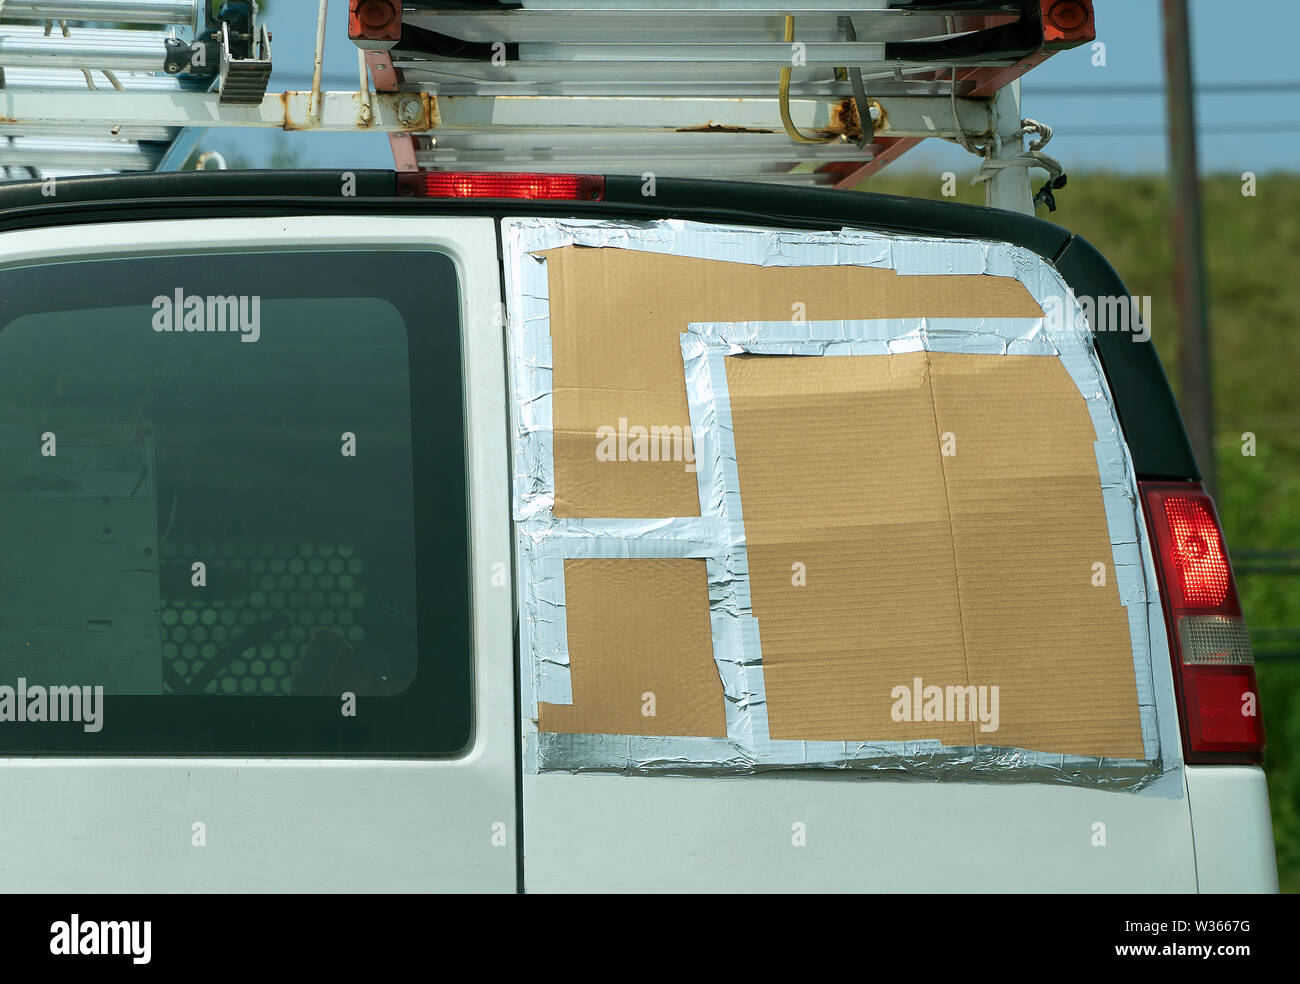 Un temporal de cartón y cinta adhesiva de aluminio de solución en esta furgoneta con la falta de una ventana trasera. Foto de stock